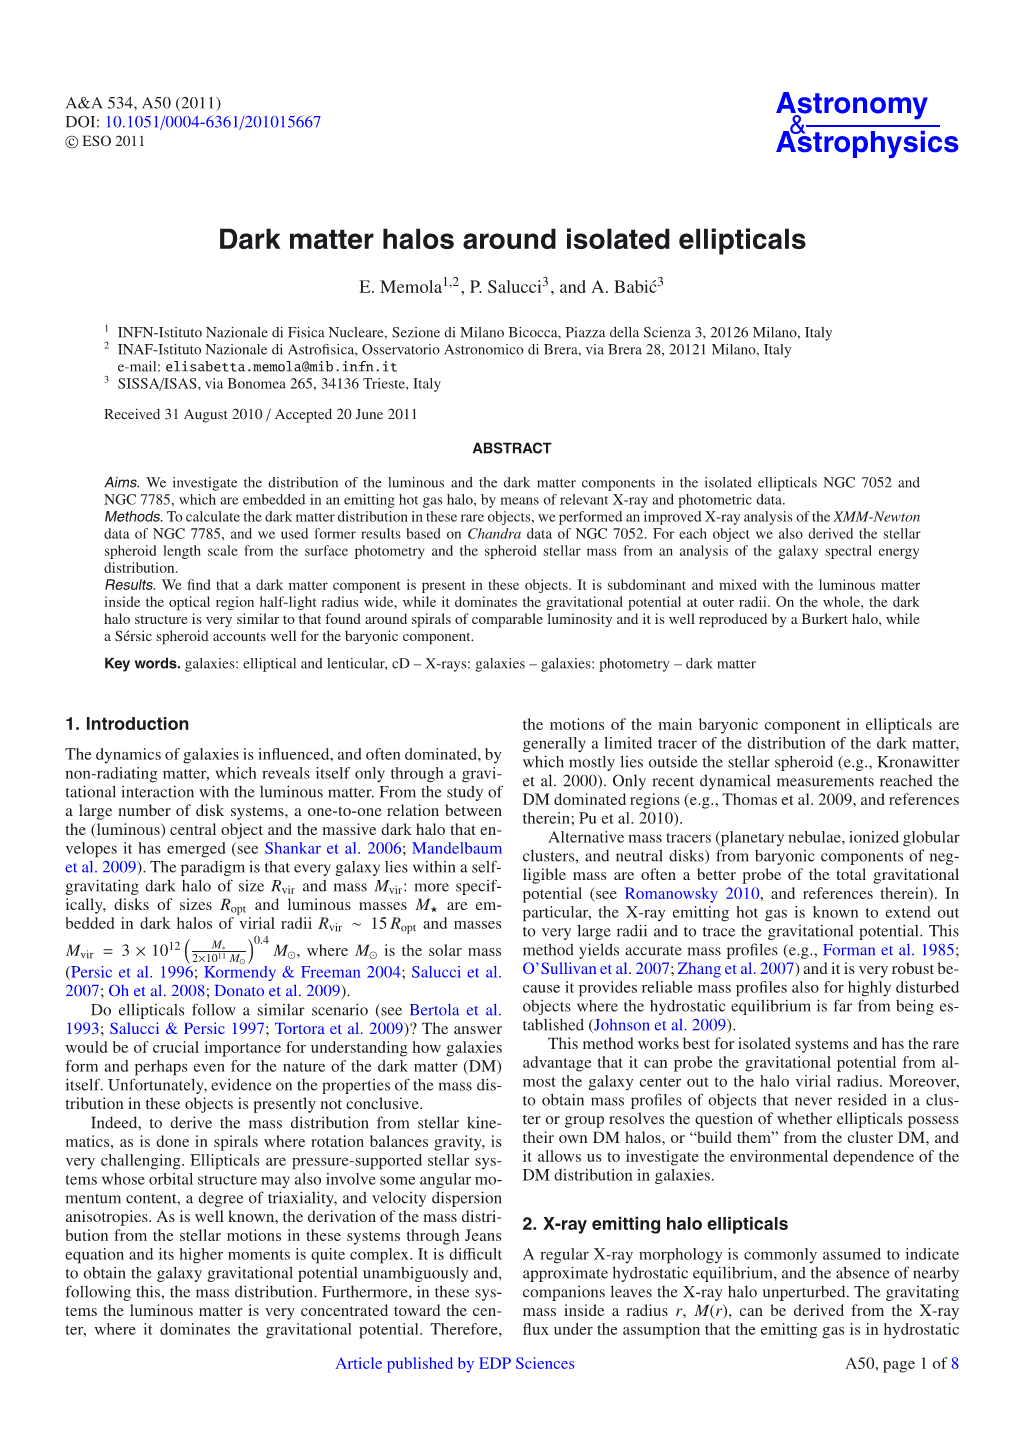 Dark Matter Halos Around Isolated Ellipticals